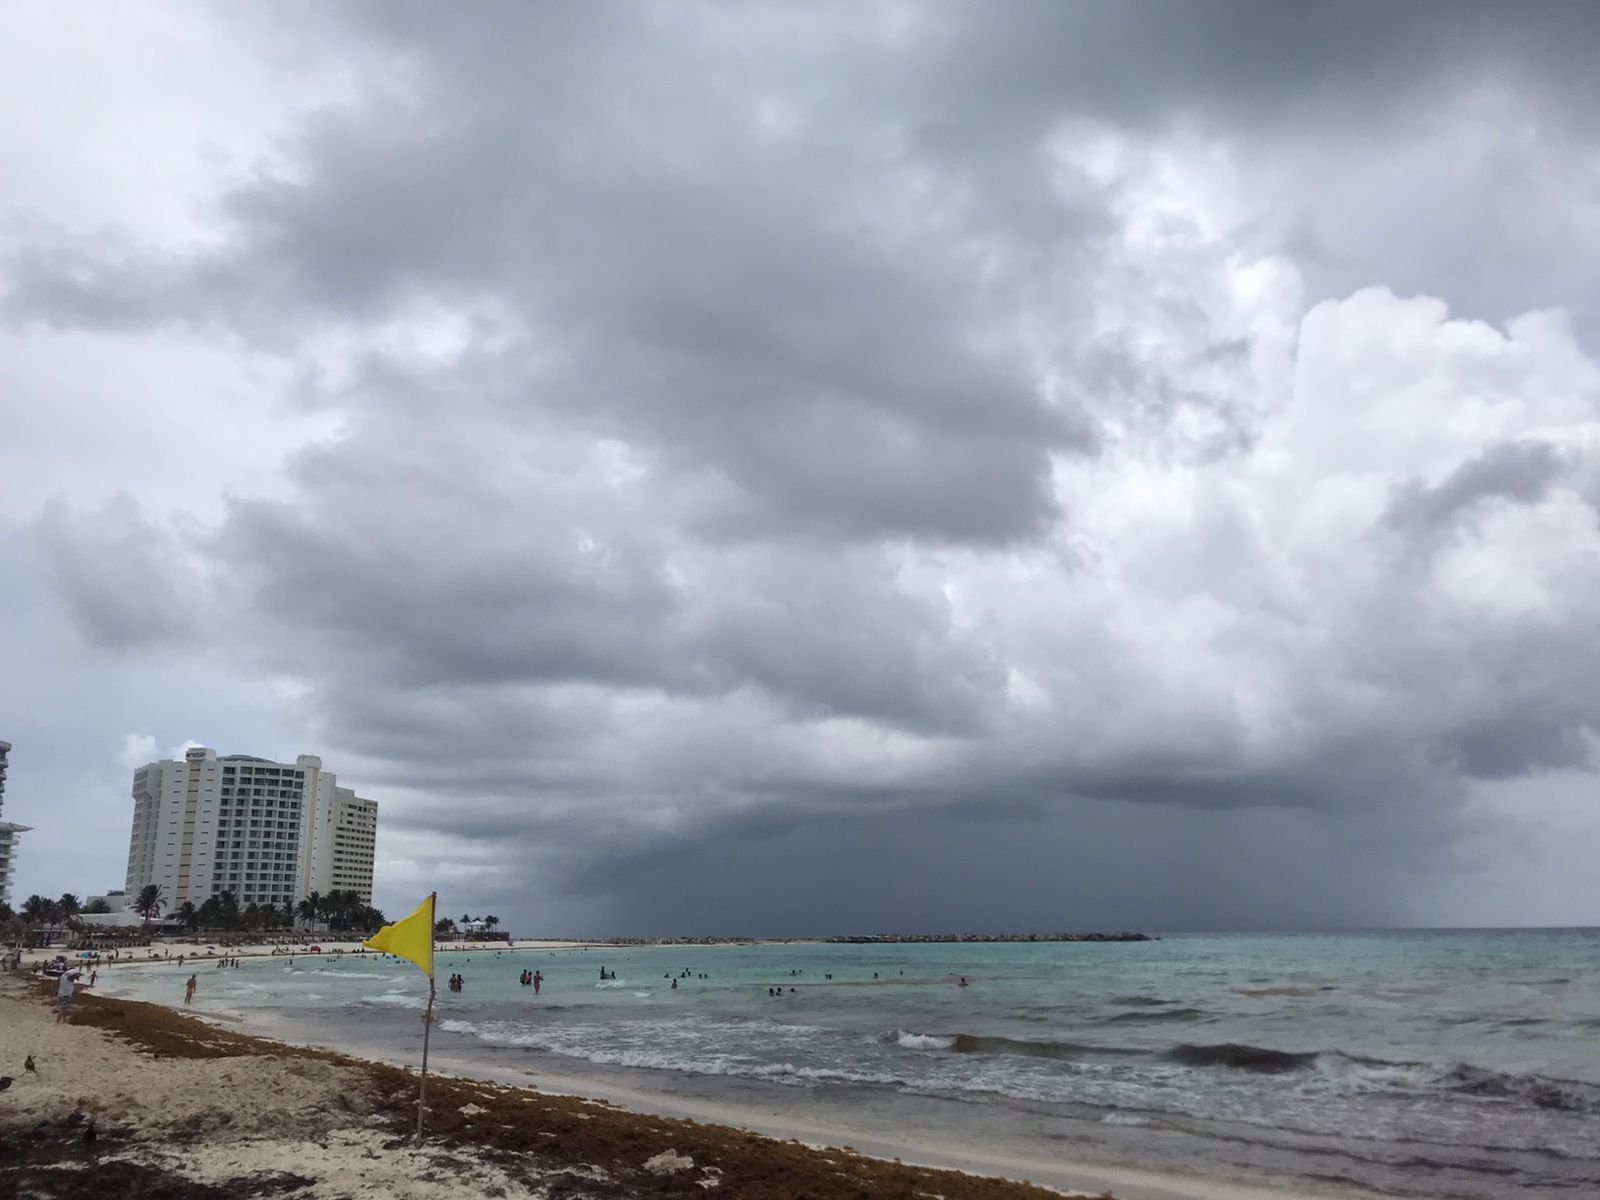 Clima en Quintana Roo 30 de enero: Se esperan cielos nublados y algunas lluvias dispersas